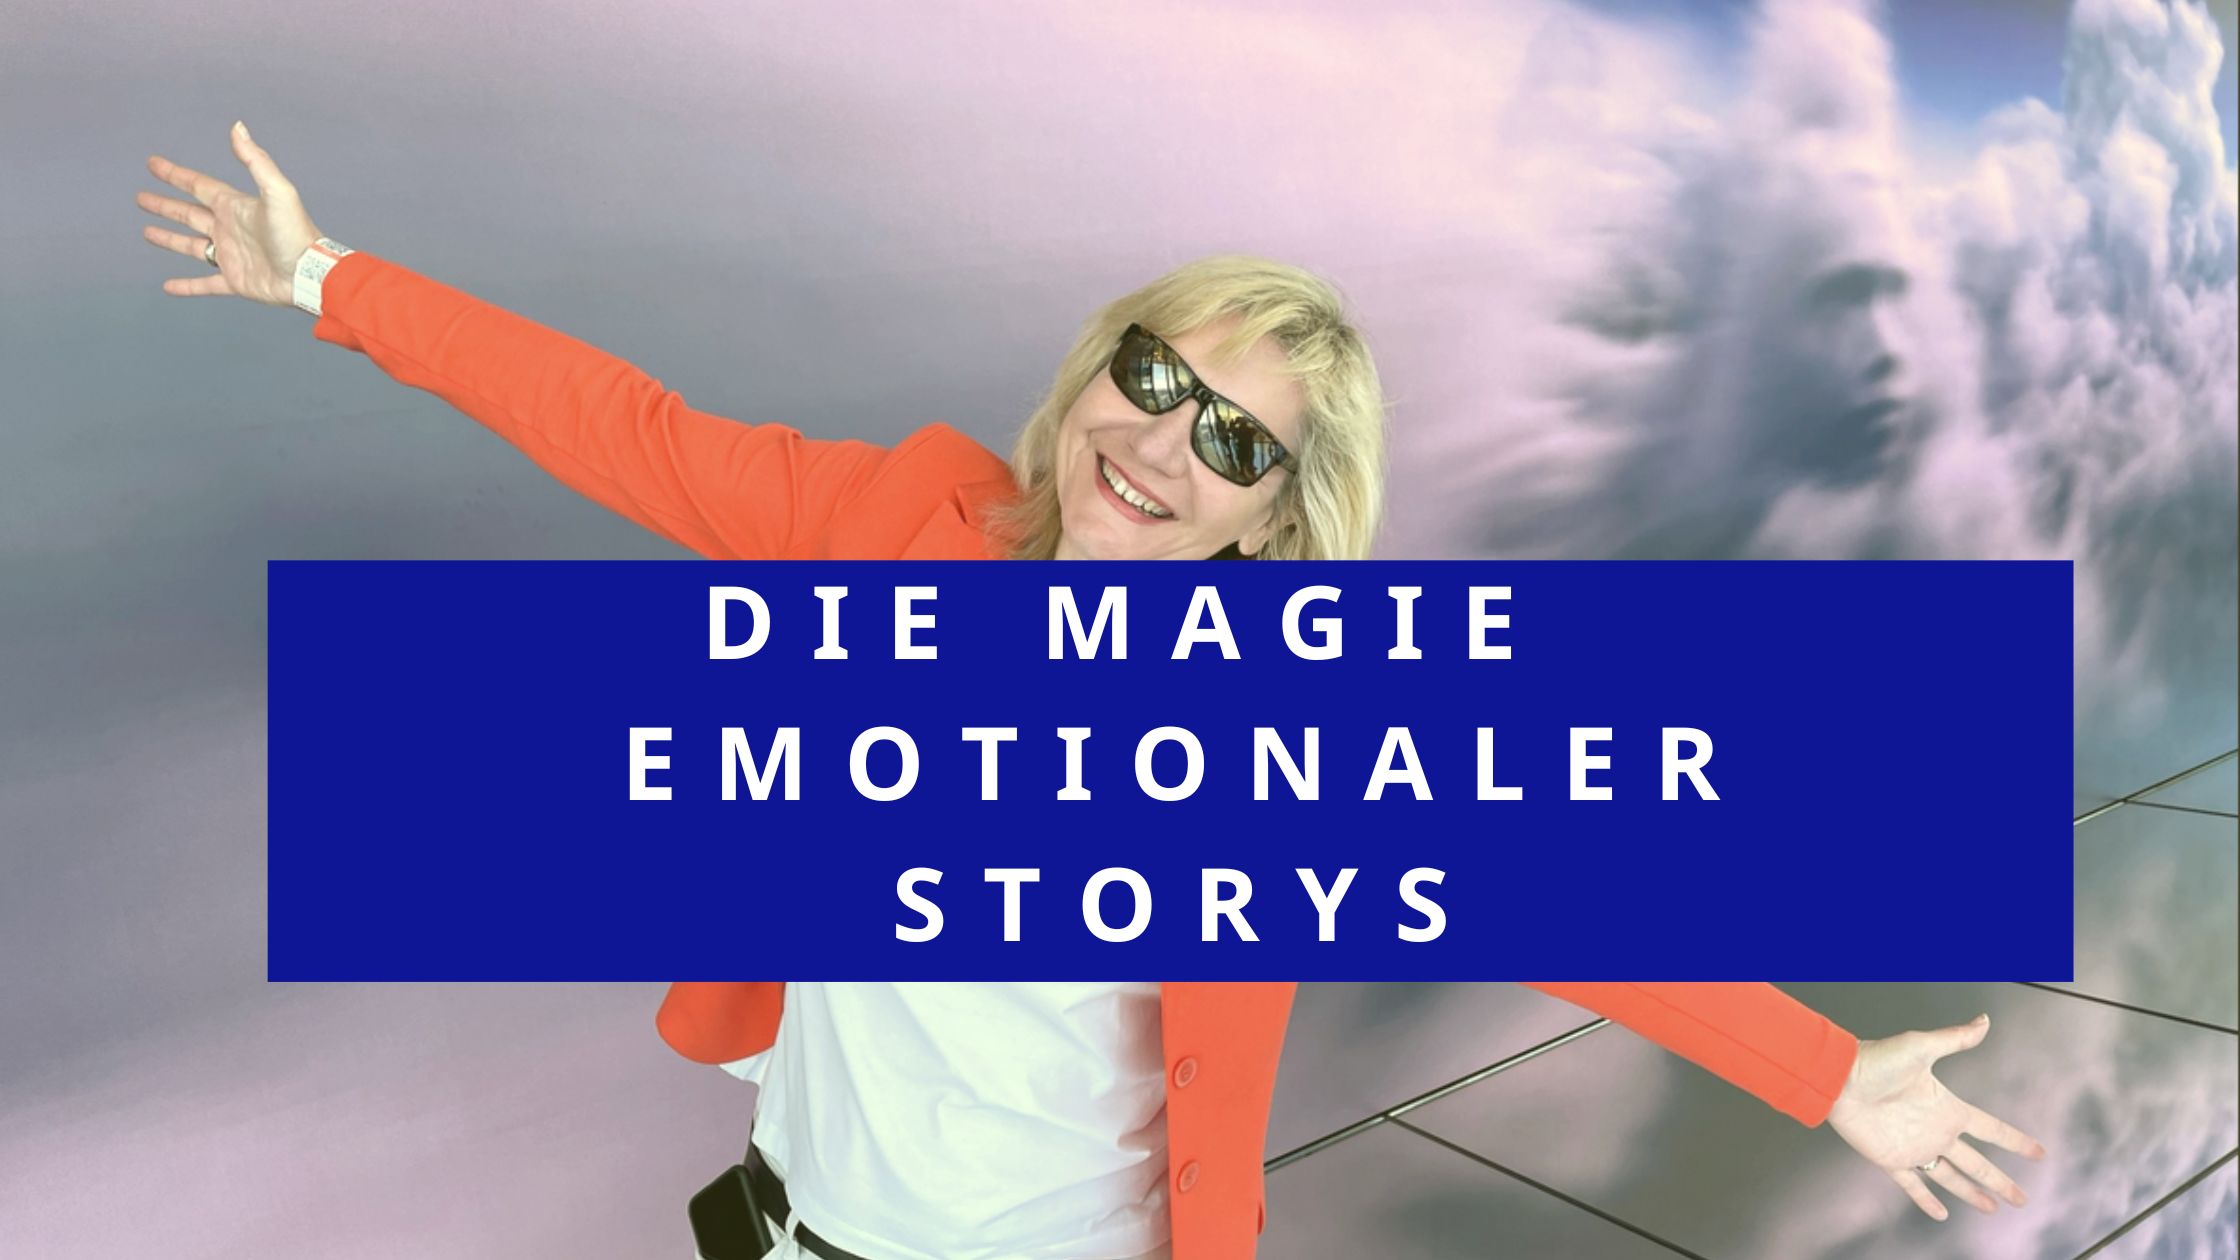 Die Magie von emotionalen Storys